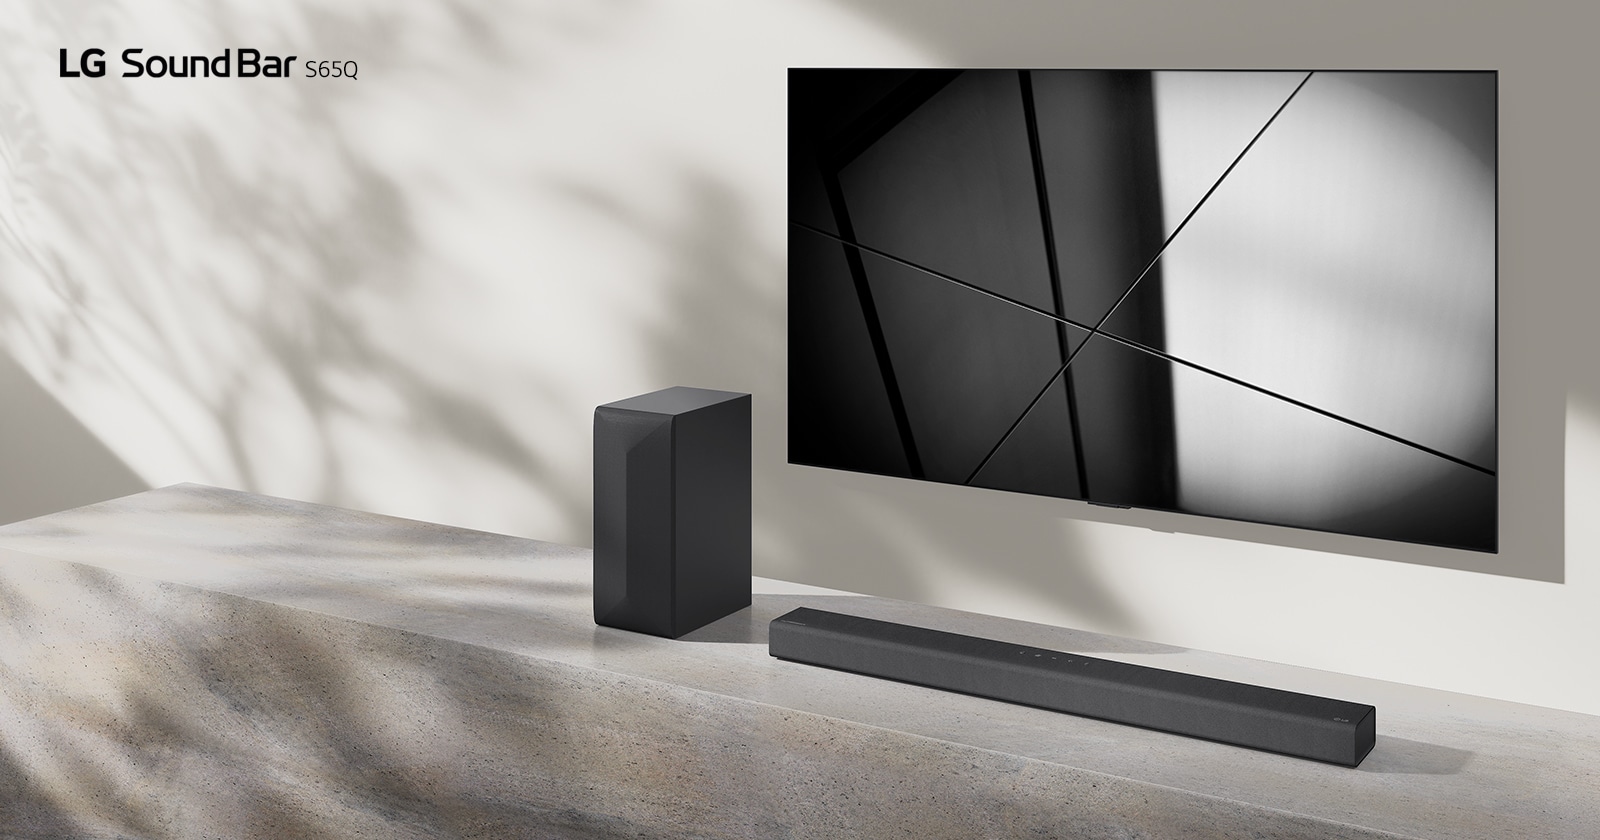 LG soundbar S65Q ja LG televiisor on paigutatud koos elutuppa. Teler näitab mustvalget pilti.